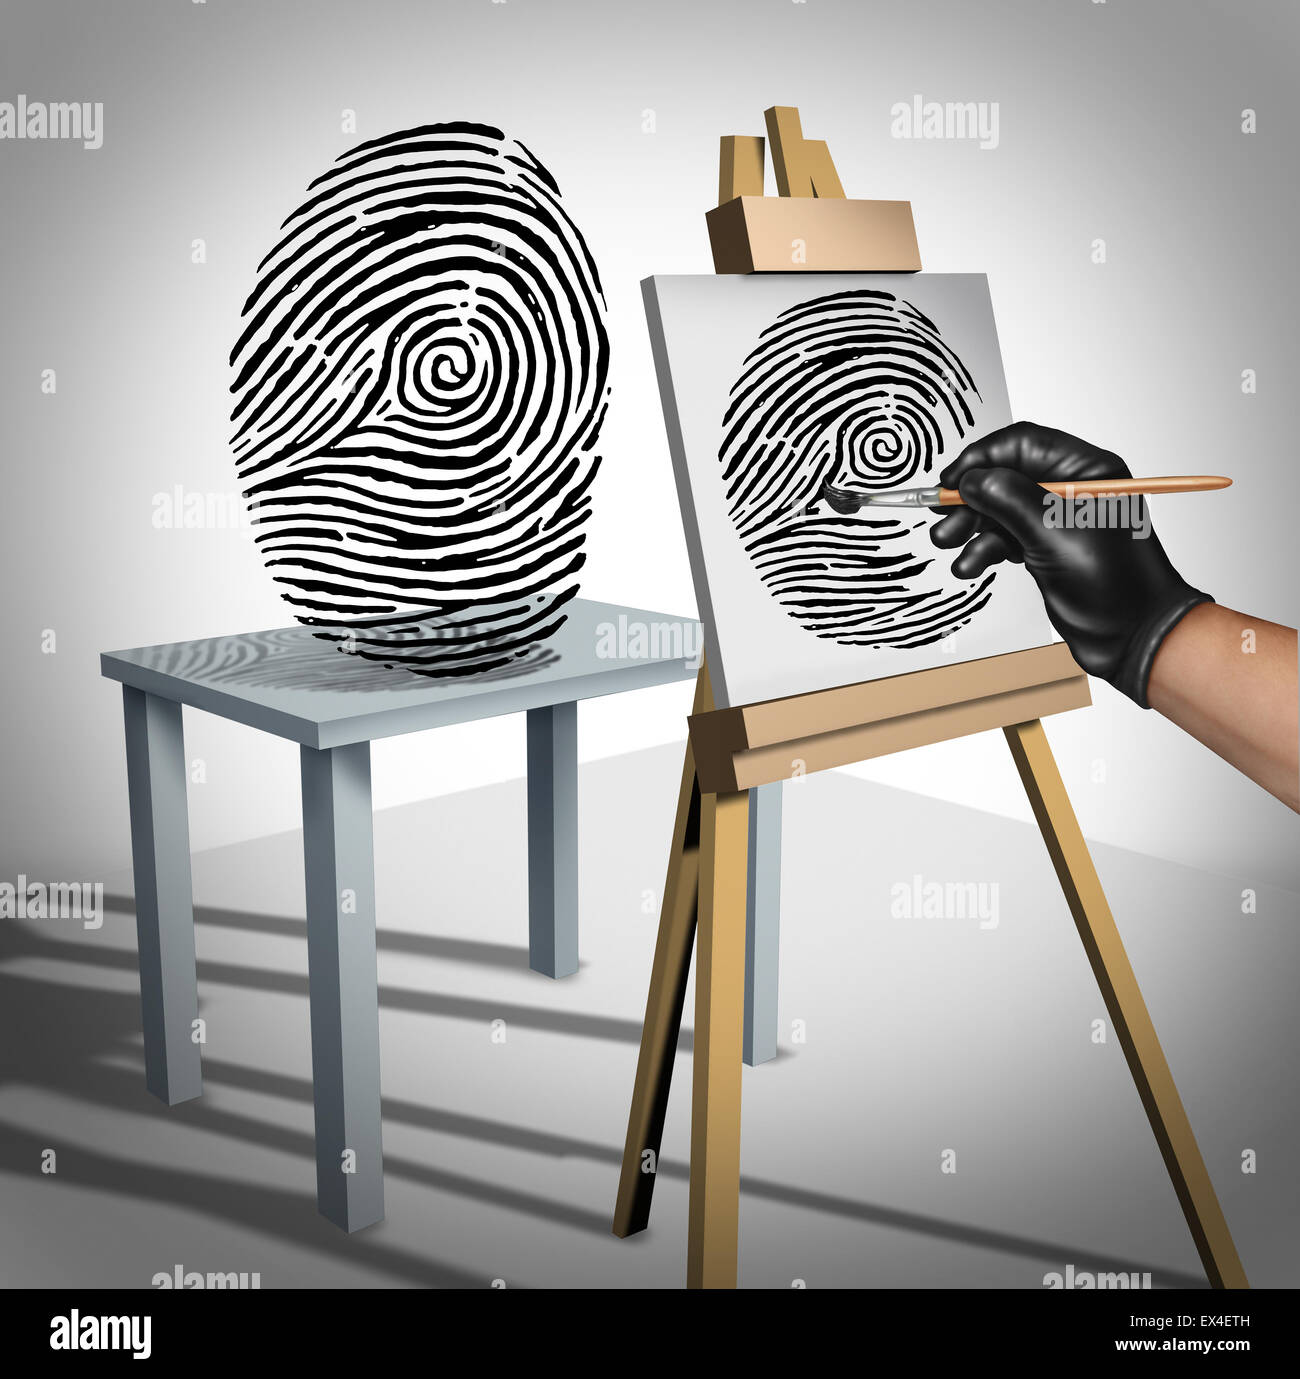 Identität Diebstahl als krimineller Malerei eine Kopie eines Fingerabdrucks als Sicherheitssymbol für ID-Schutz und Schutz der private Daten im Internet oder persönlichen Server Konzept. Stockfoto